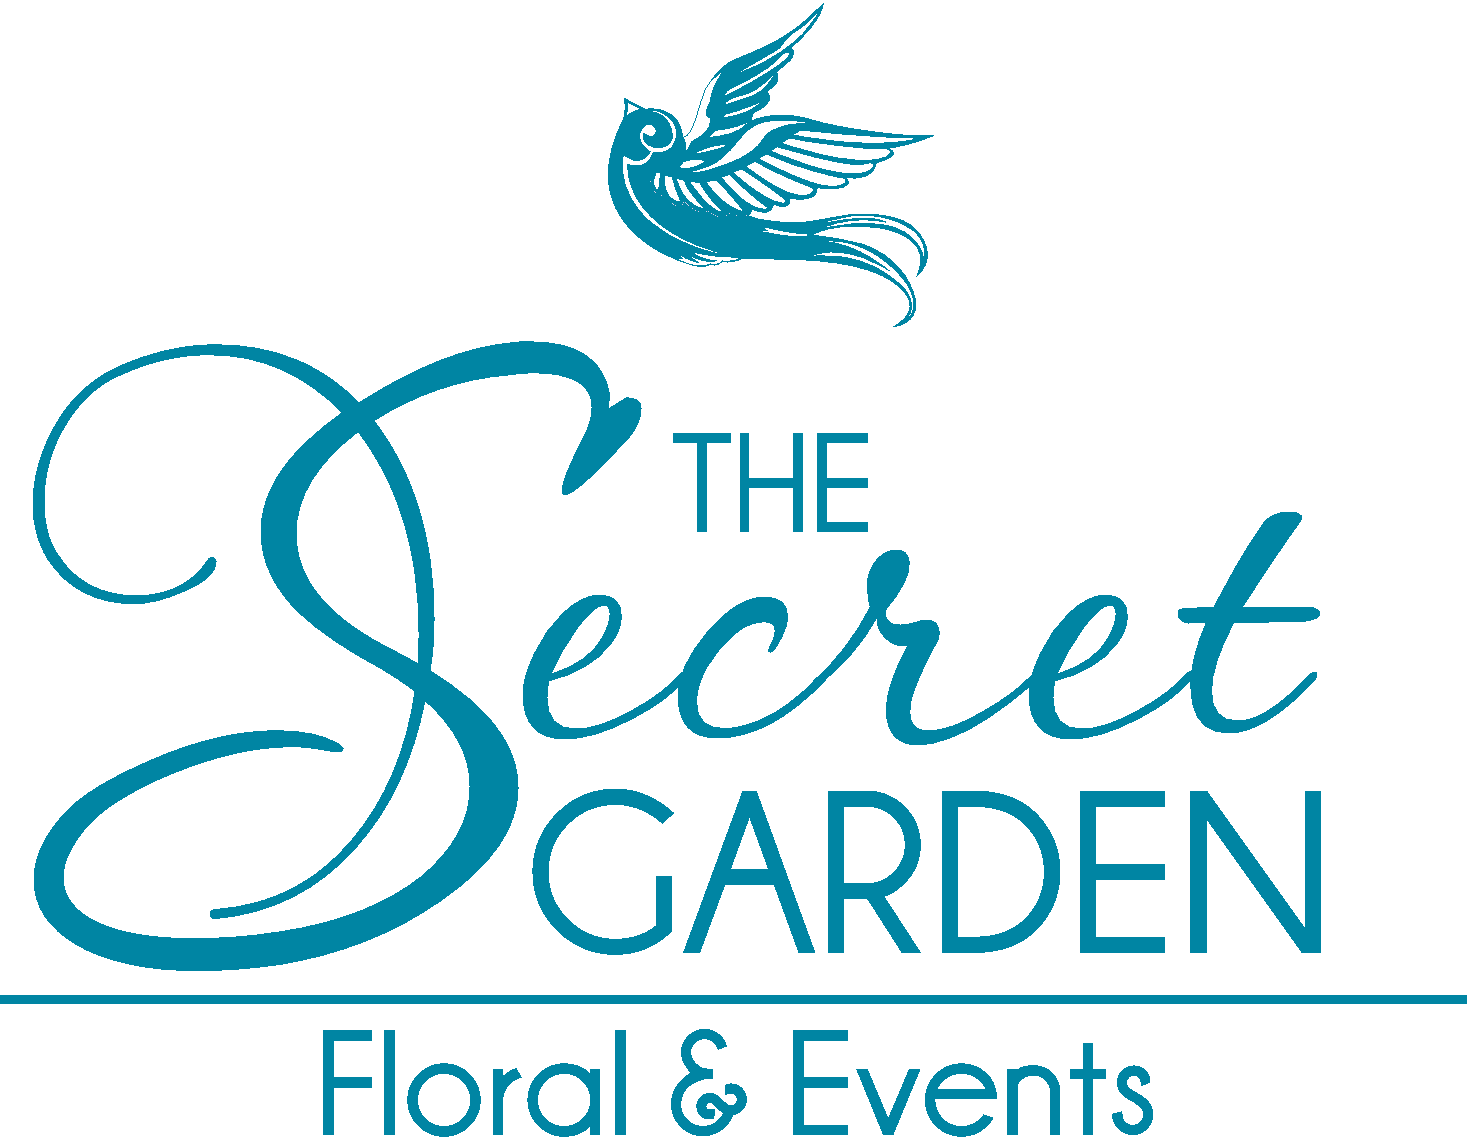 The Secret Garden Floral & Events